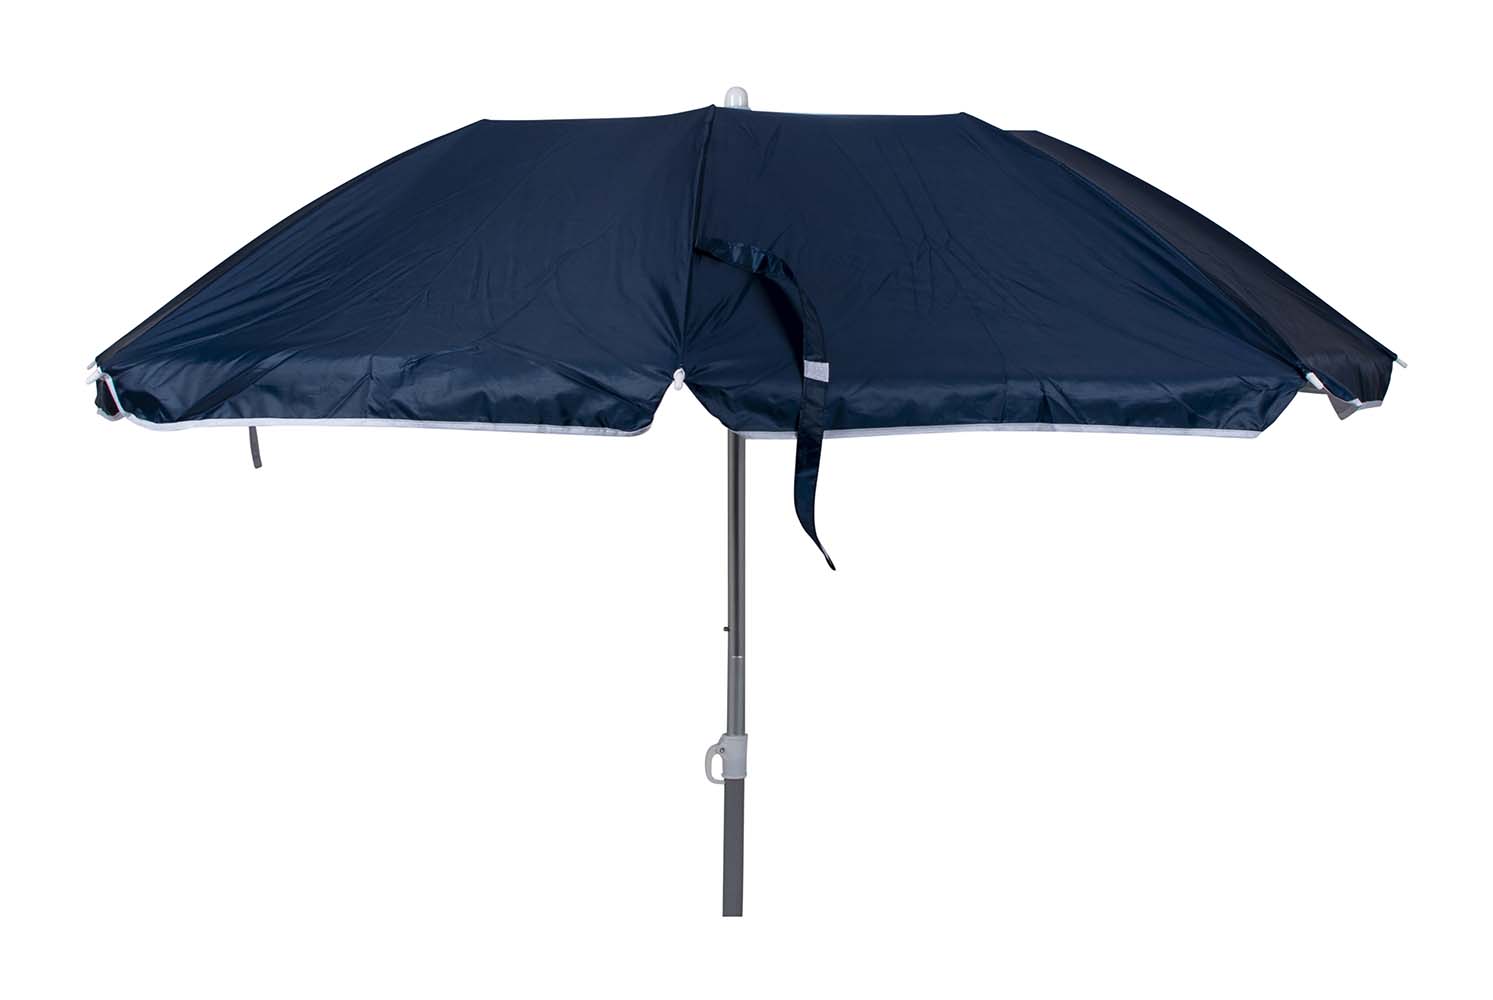 7267272 Een 3-delige parasol met met lichtgewicht aluminium frame. In hoogte verstelbaar. Zeer gehikt voor in het zand, in een parasolvoet of in een tafelopening. De parasol is erg compact (Ø 13x67,5 cm) dus gemakkelijk mee te nemen. Daarnaast is de onderzijde voorzien van een zilvercoating voor extra UV wering. De steel van de parasol heeft een diameter van 25 millimeter.